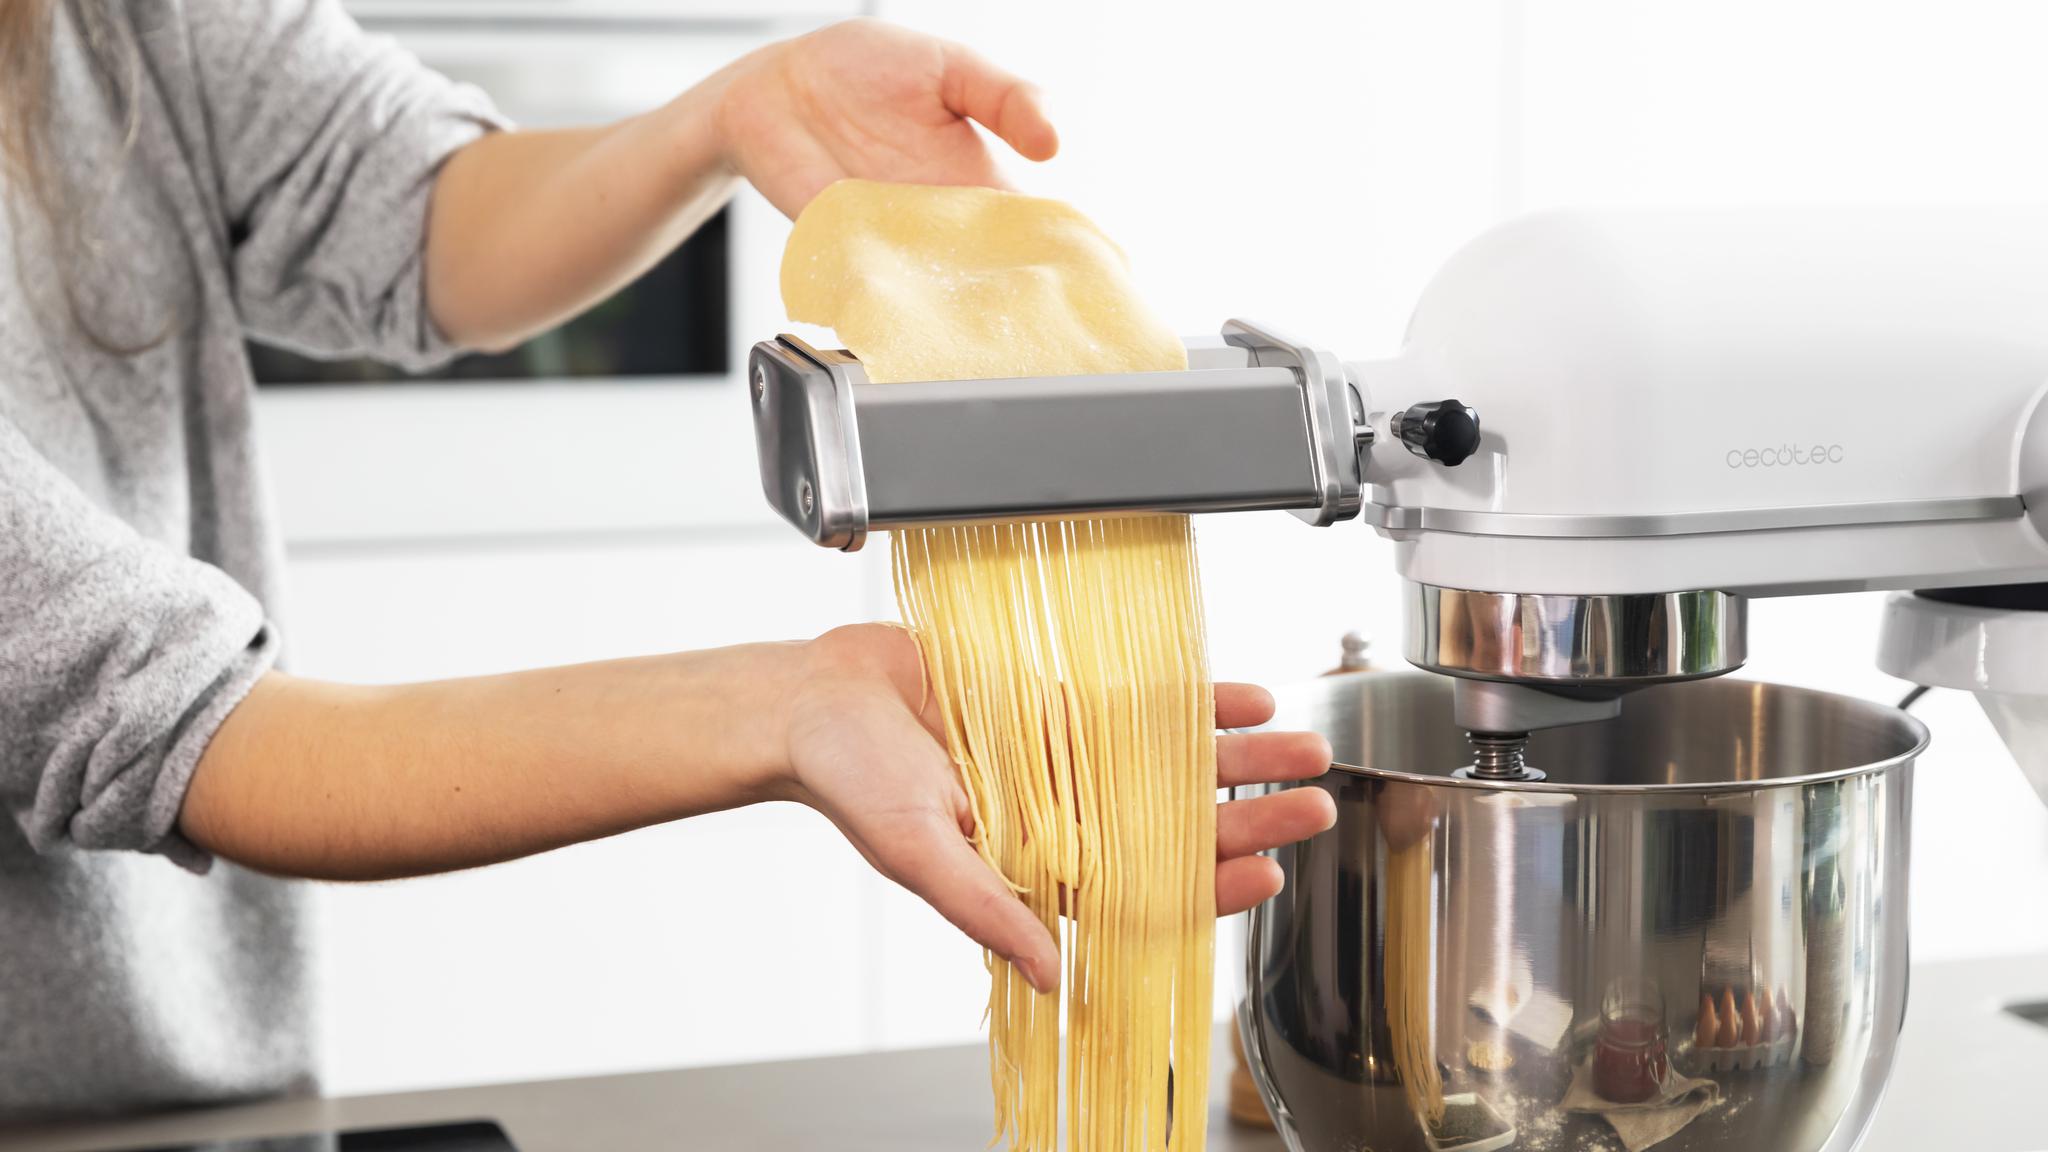 Préparez des spaghettis authentiques et frais rapidement